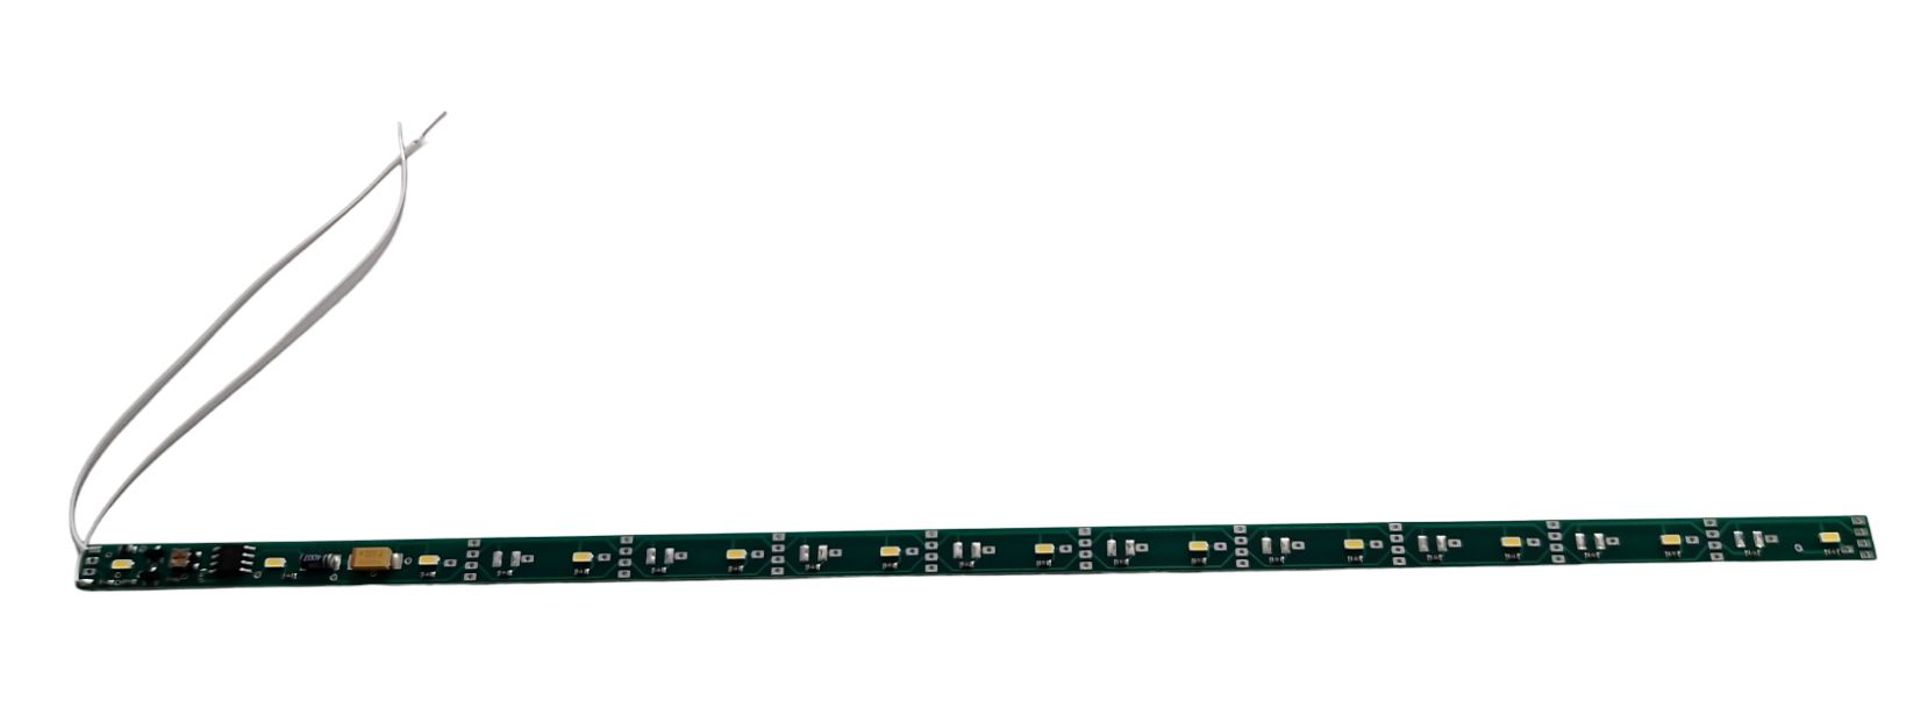 MS 13041 - Lichtleiste kaltweiss, 290 mm mit Kondensator, Elektronik unten